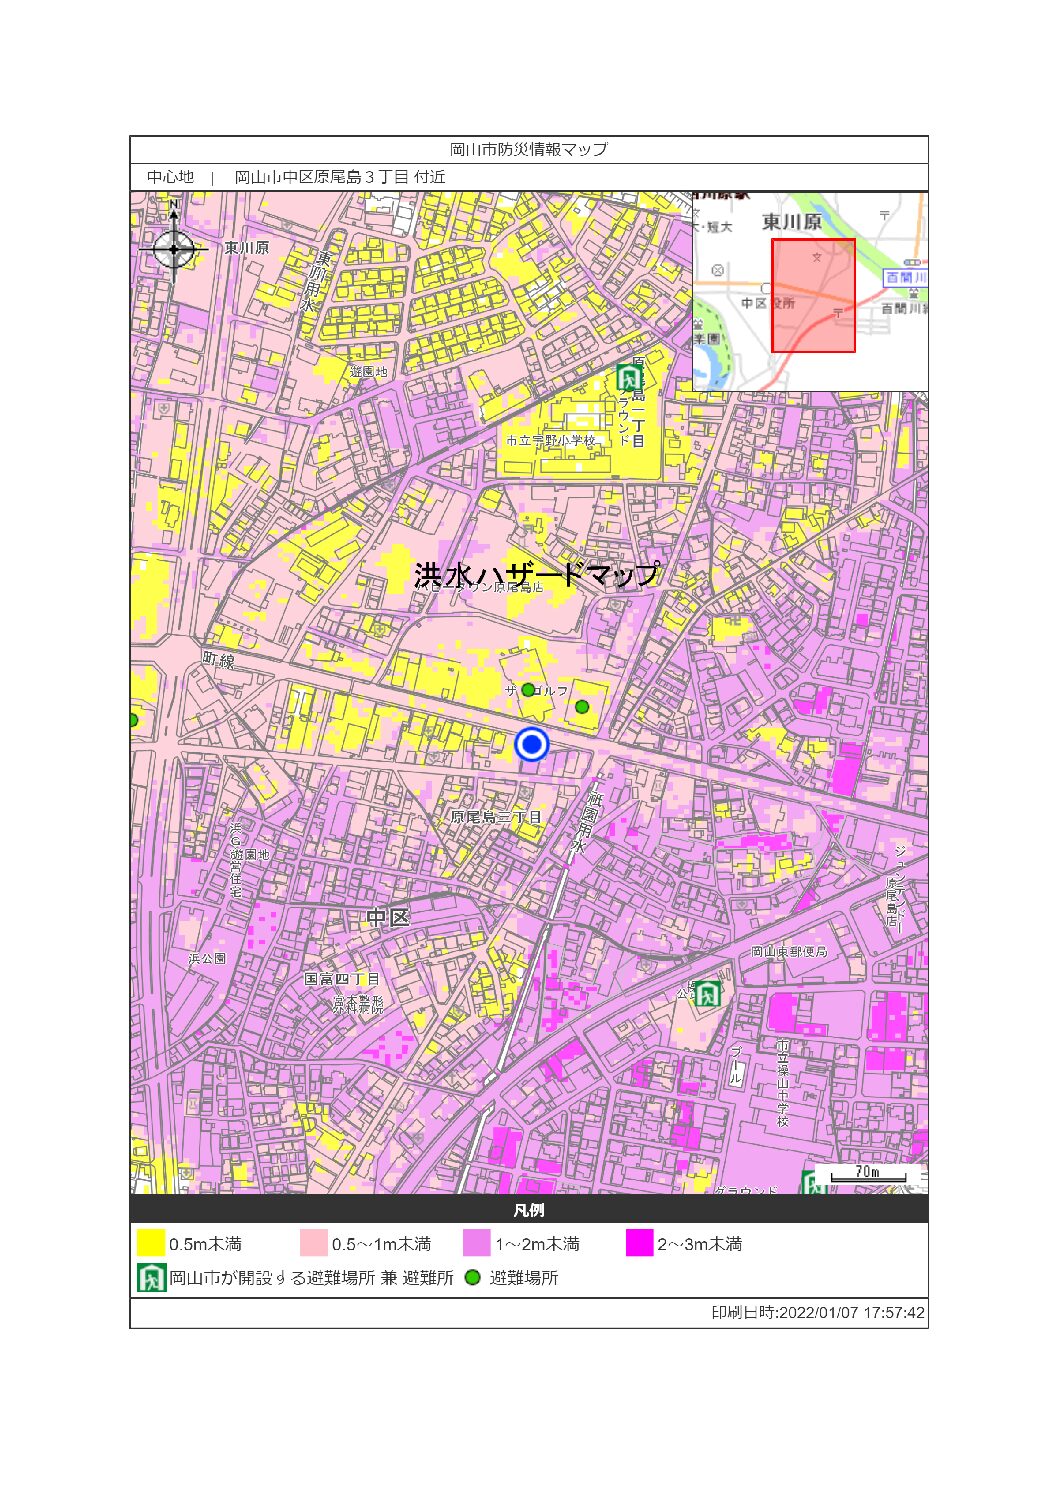 岡山市ハザードマップをご存じですか？